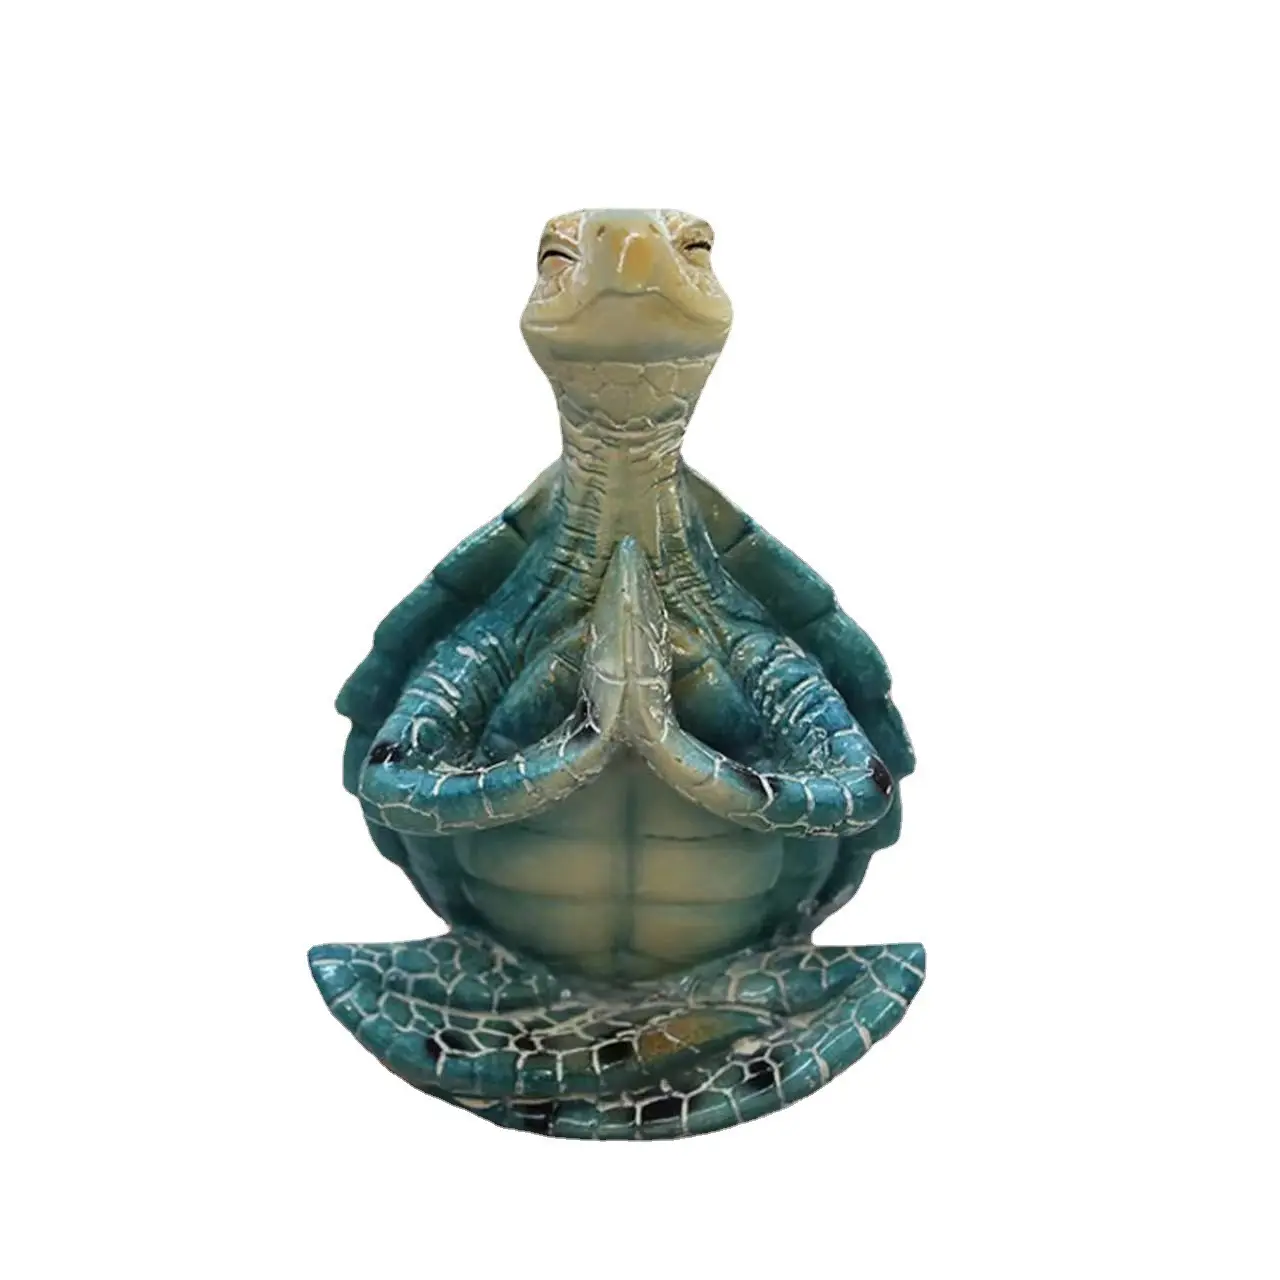 Cross-border resin decorative ornaments meditate sea turtle meditation sea turtle animal statue ornaments ornaments resin crafts